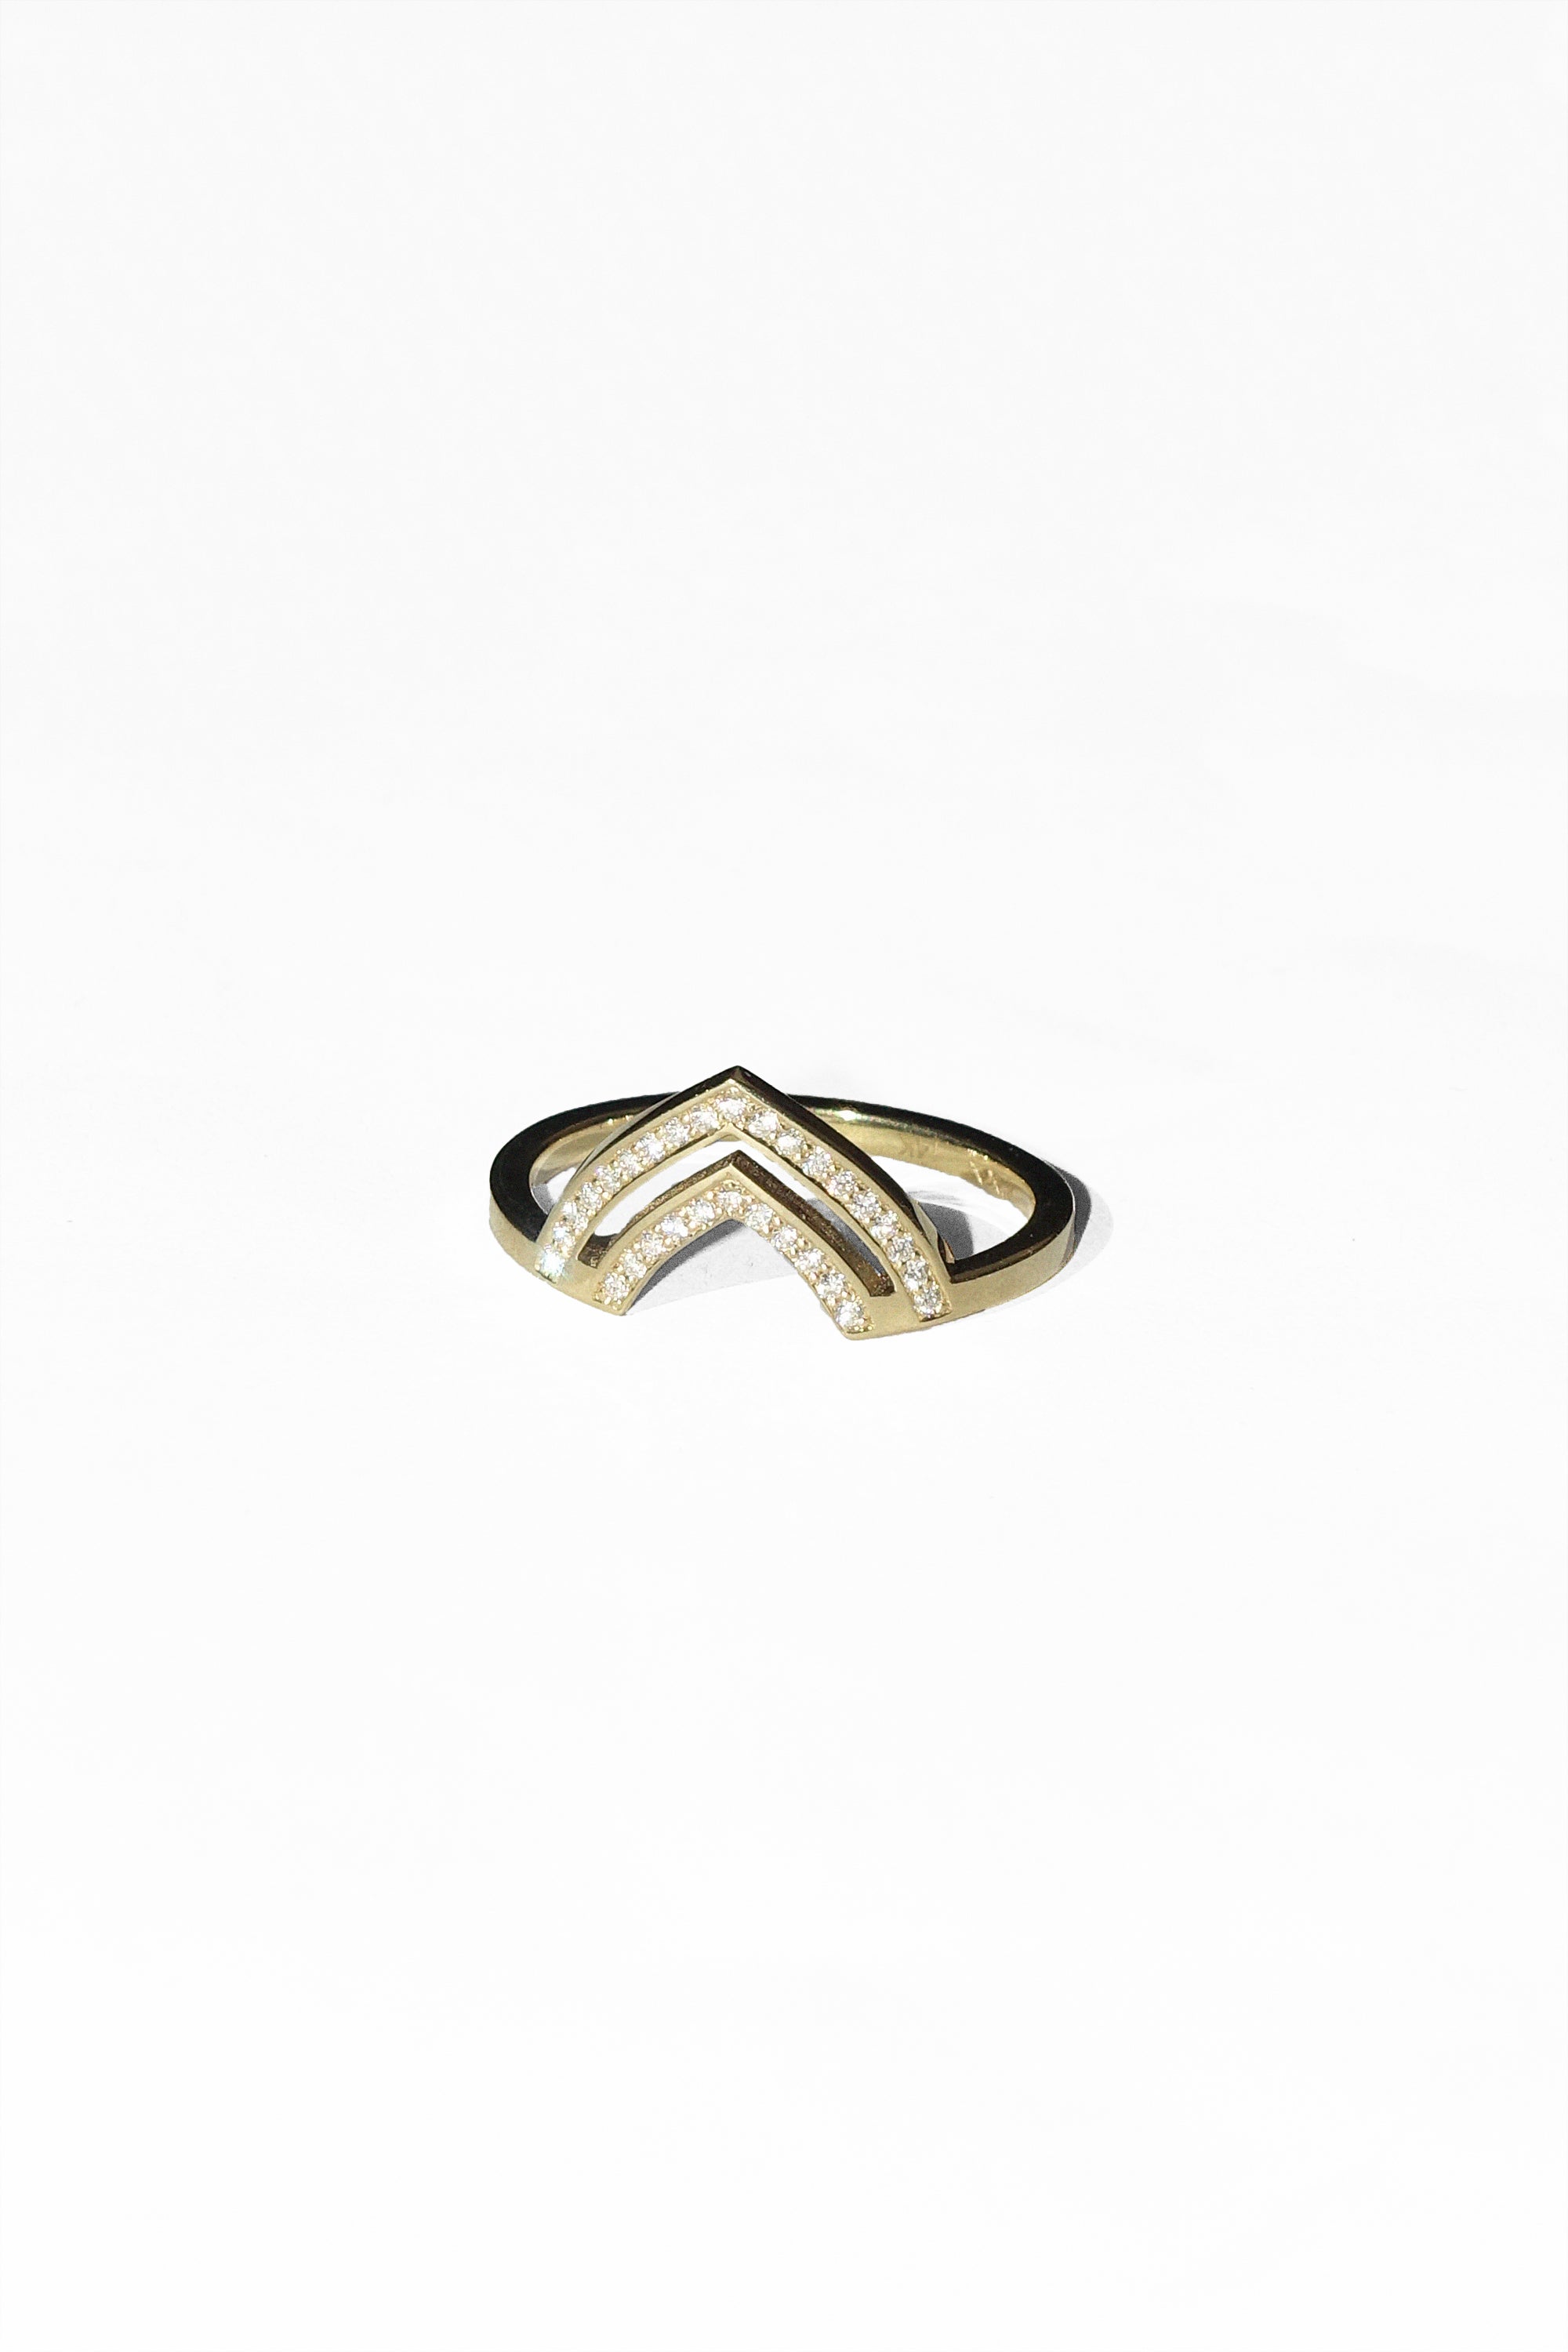 White Diamond Lacuna Rioga Ring in 14k Gold